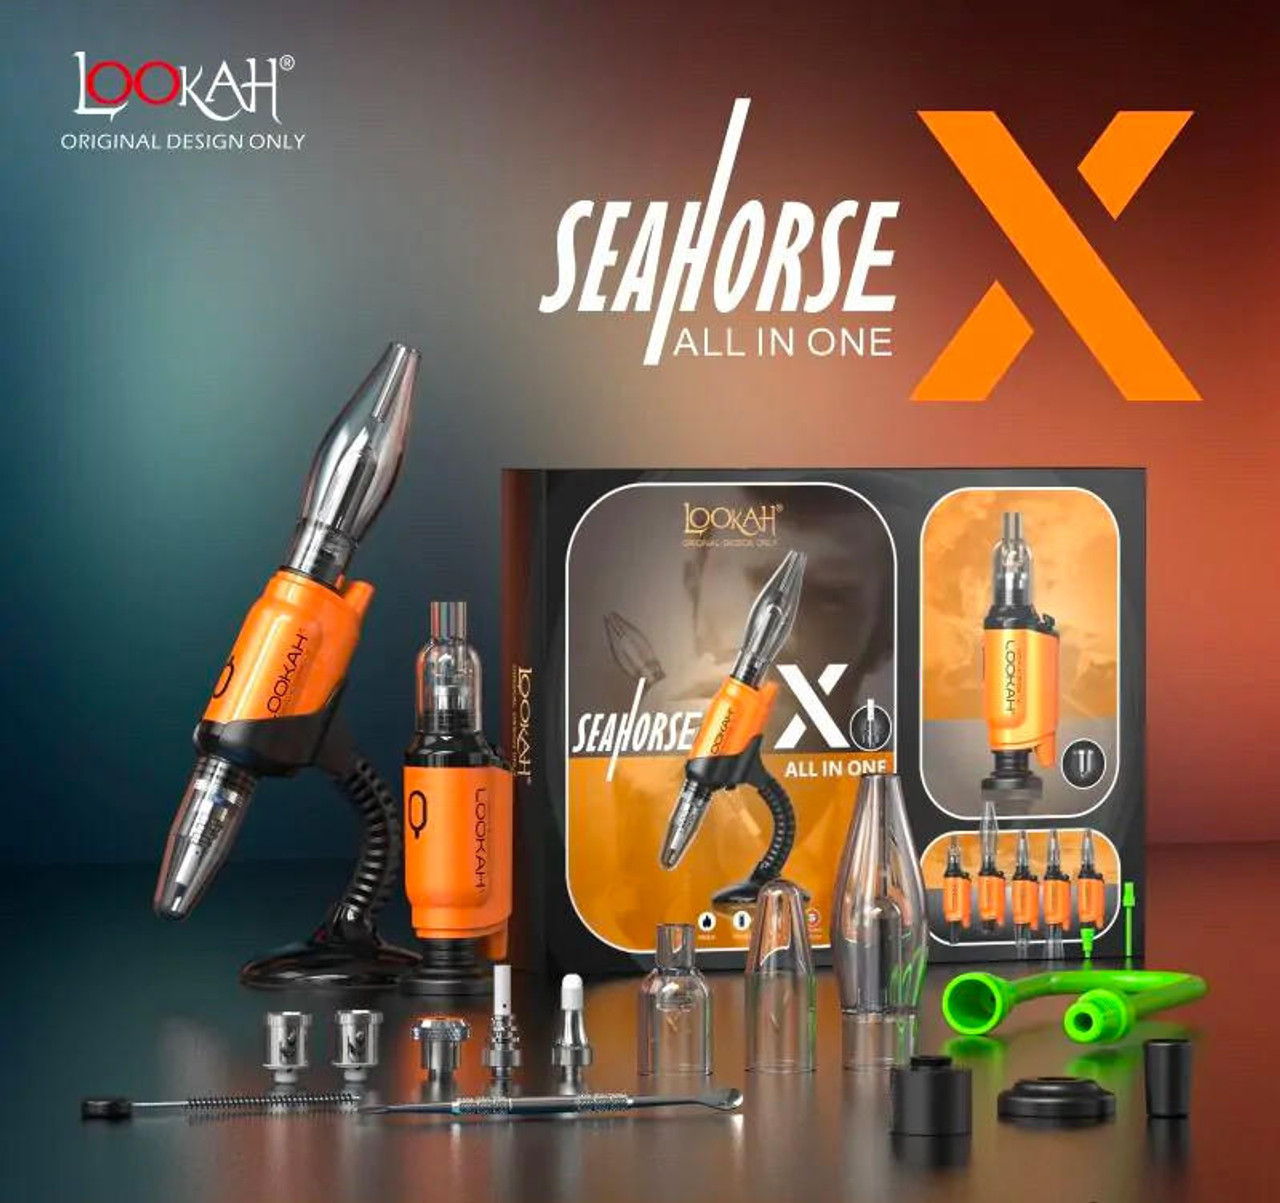 Lookah Seahorse Orange E-Nectar E-Nail Pen, Wax Collector, Portable in 3 1: X and